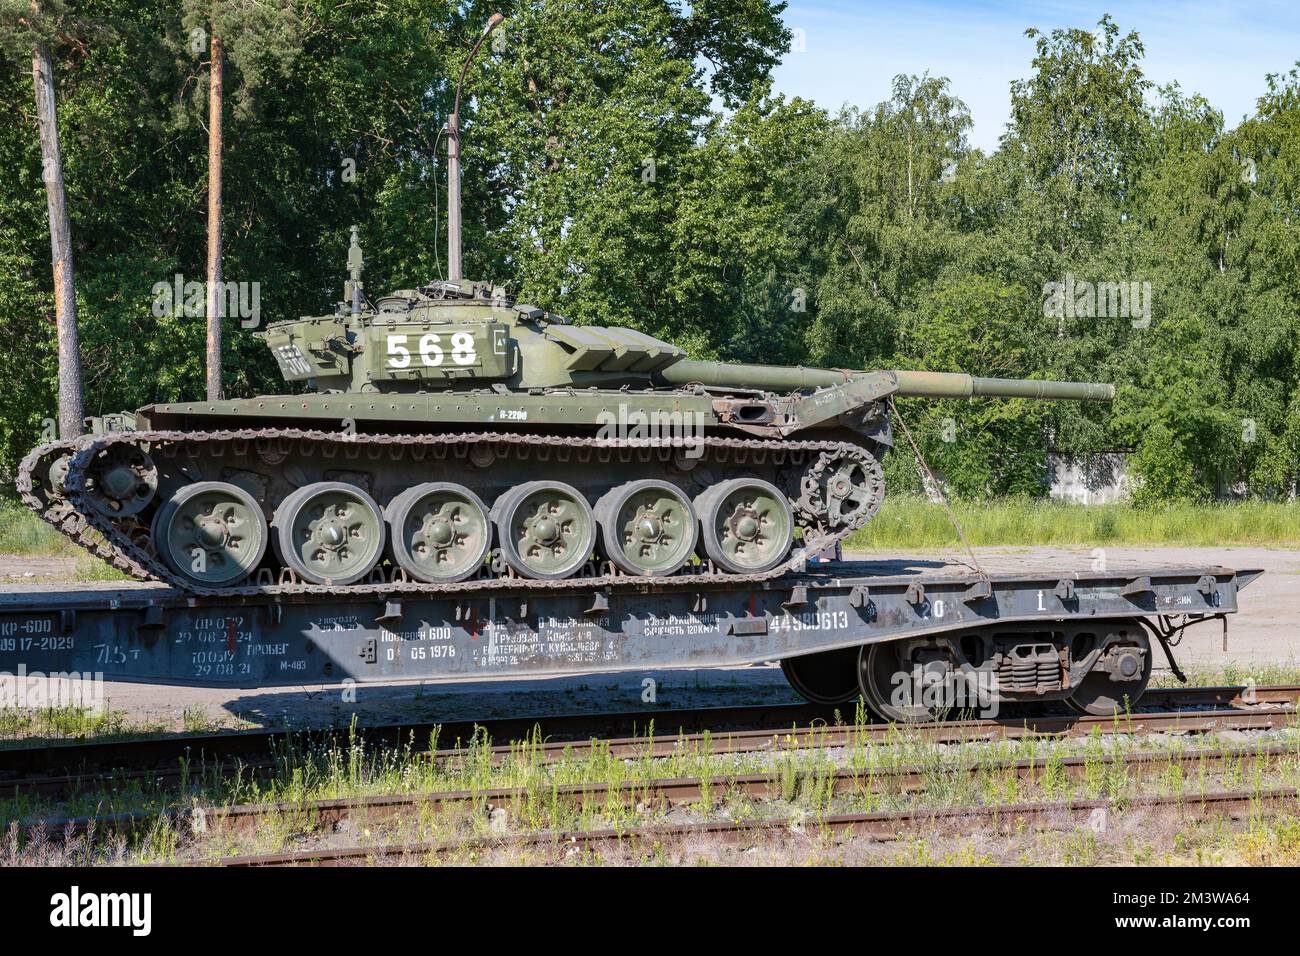 RÉGION DE LENINGRAD, RUSSIE - 02 JUILLET 2022 : char russe sur la plate-forme ferroviaire par une belle journée d'été Banque D'Images